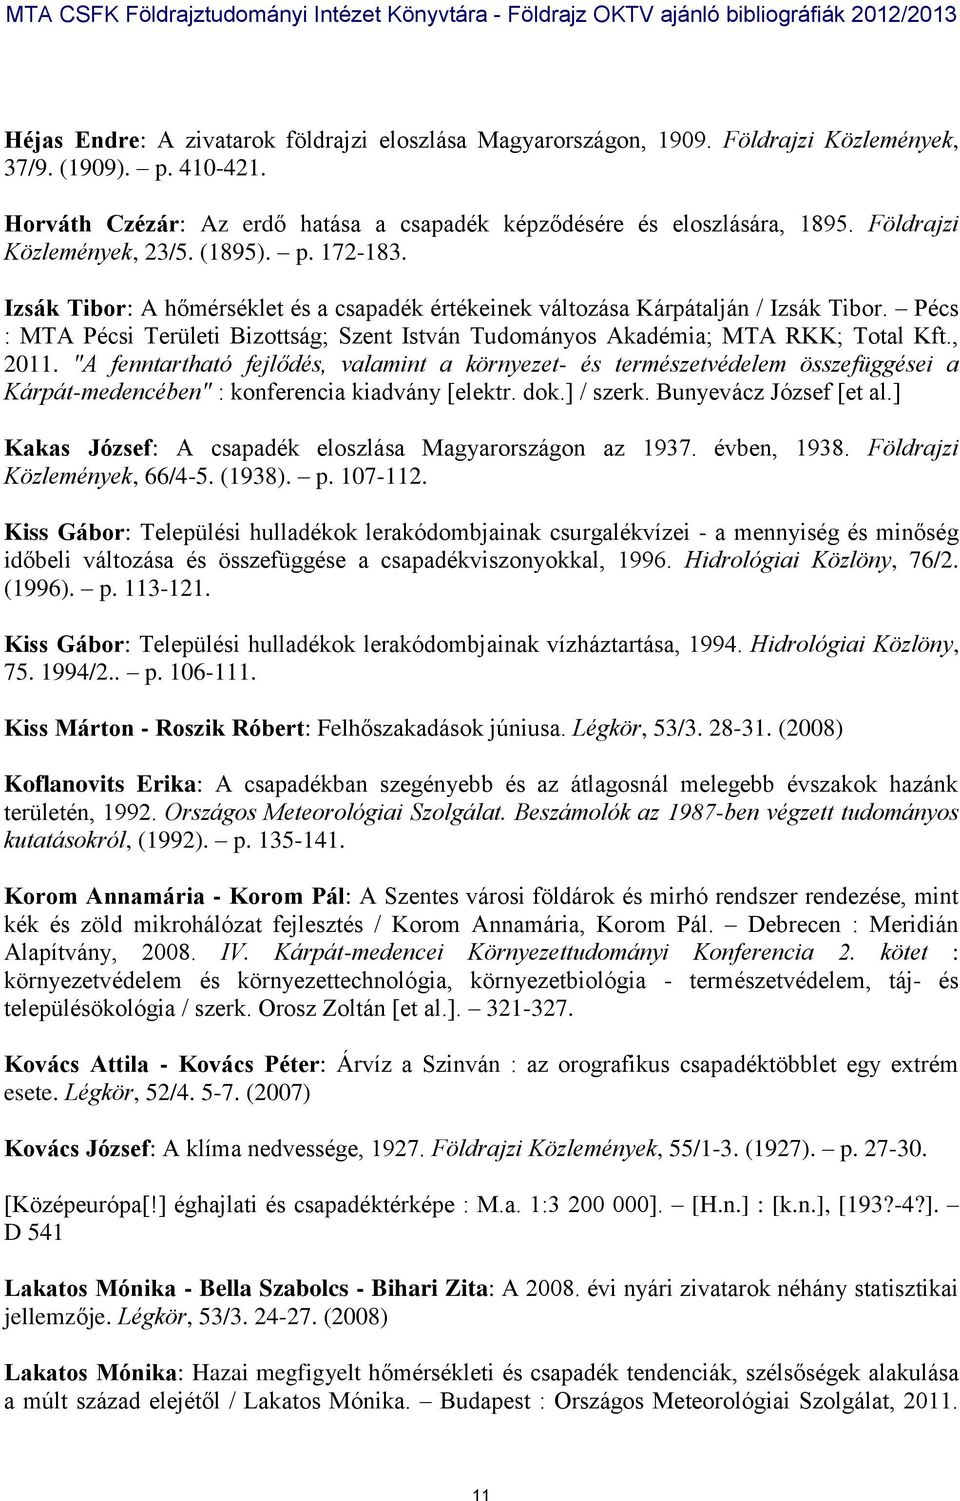 Pécs : MTA Pécsi Területi Bizottság; Szent István Tudományos Akadémia; MTA RKK; Total Kft., 2011.